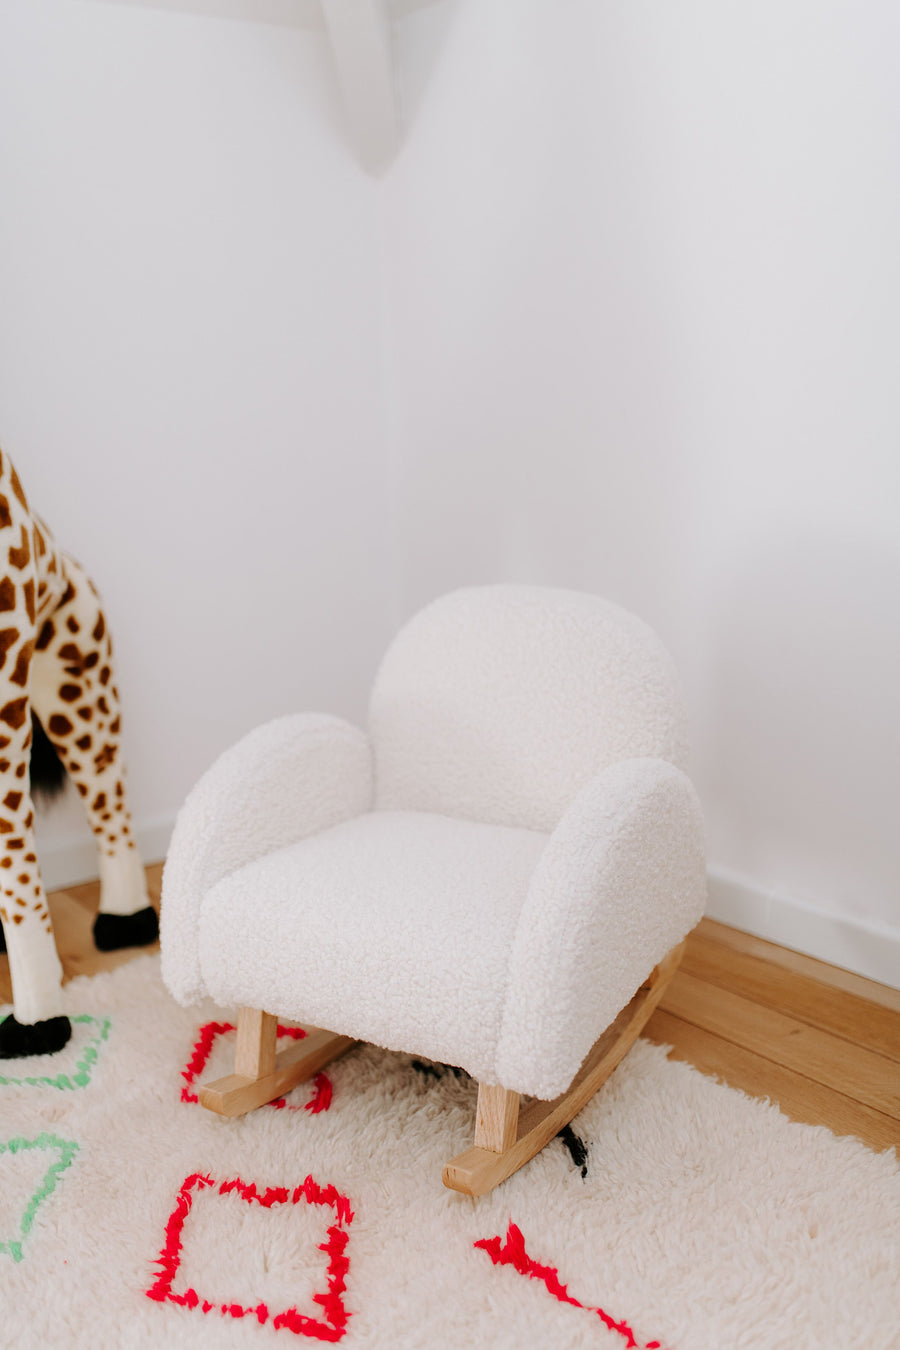 Teddy children's rocking chair Ecru / Natural - Childhome 